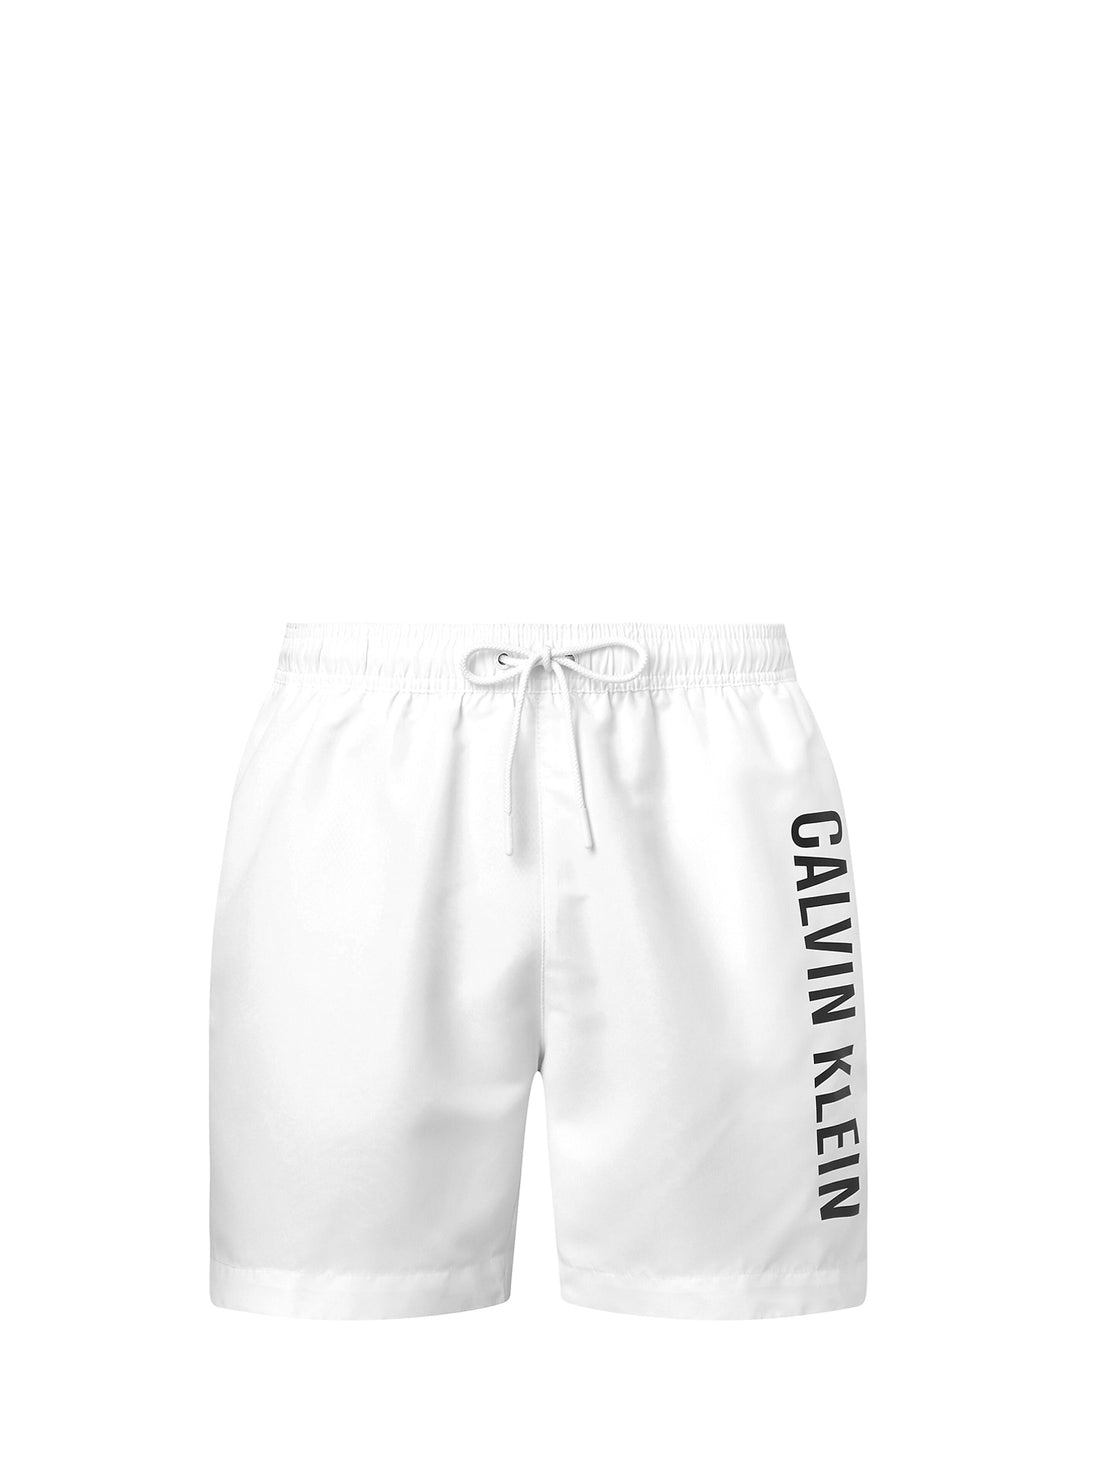 Costumi Bianco Calvin Klein Underwear